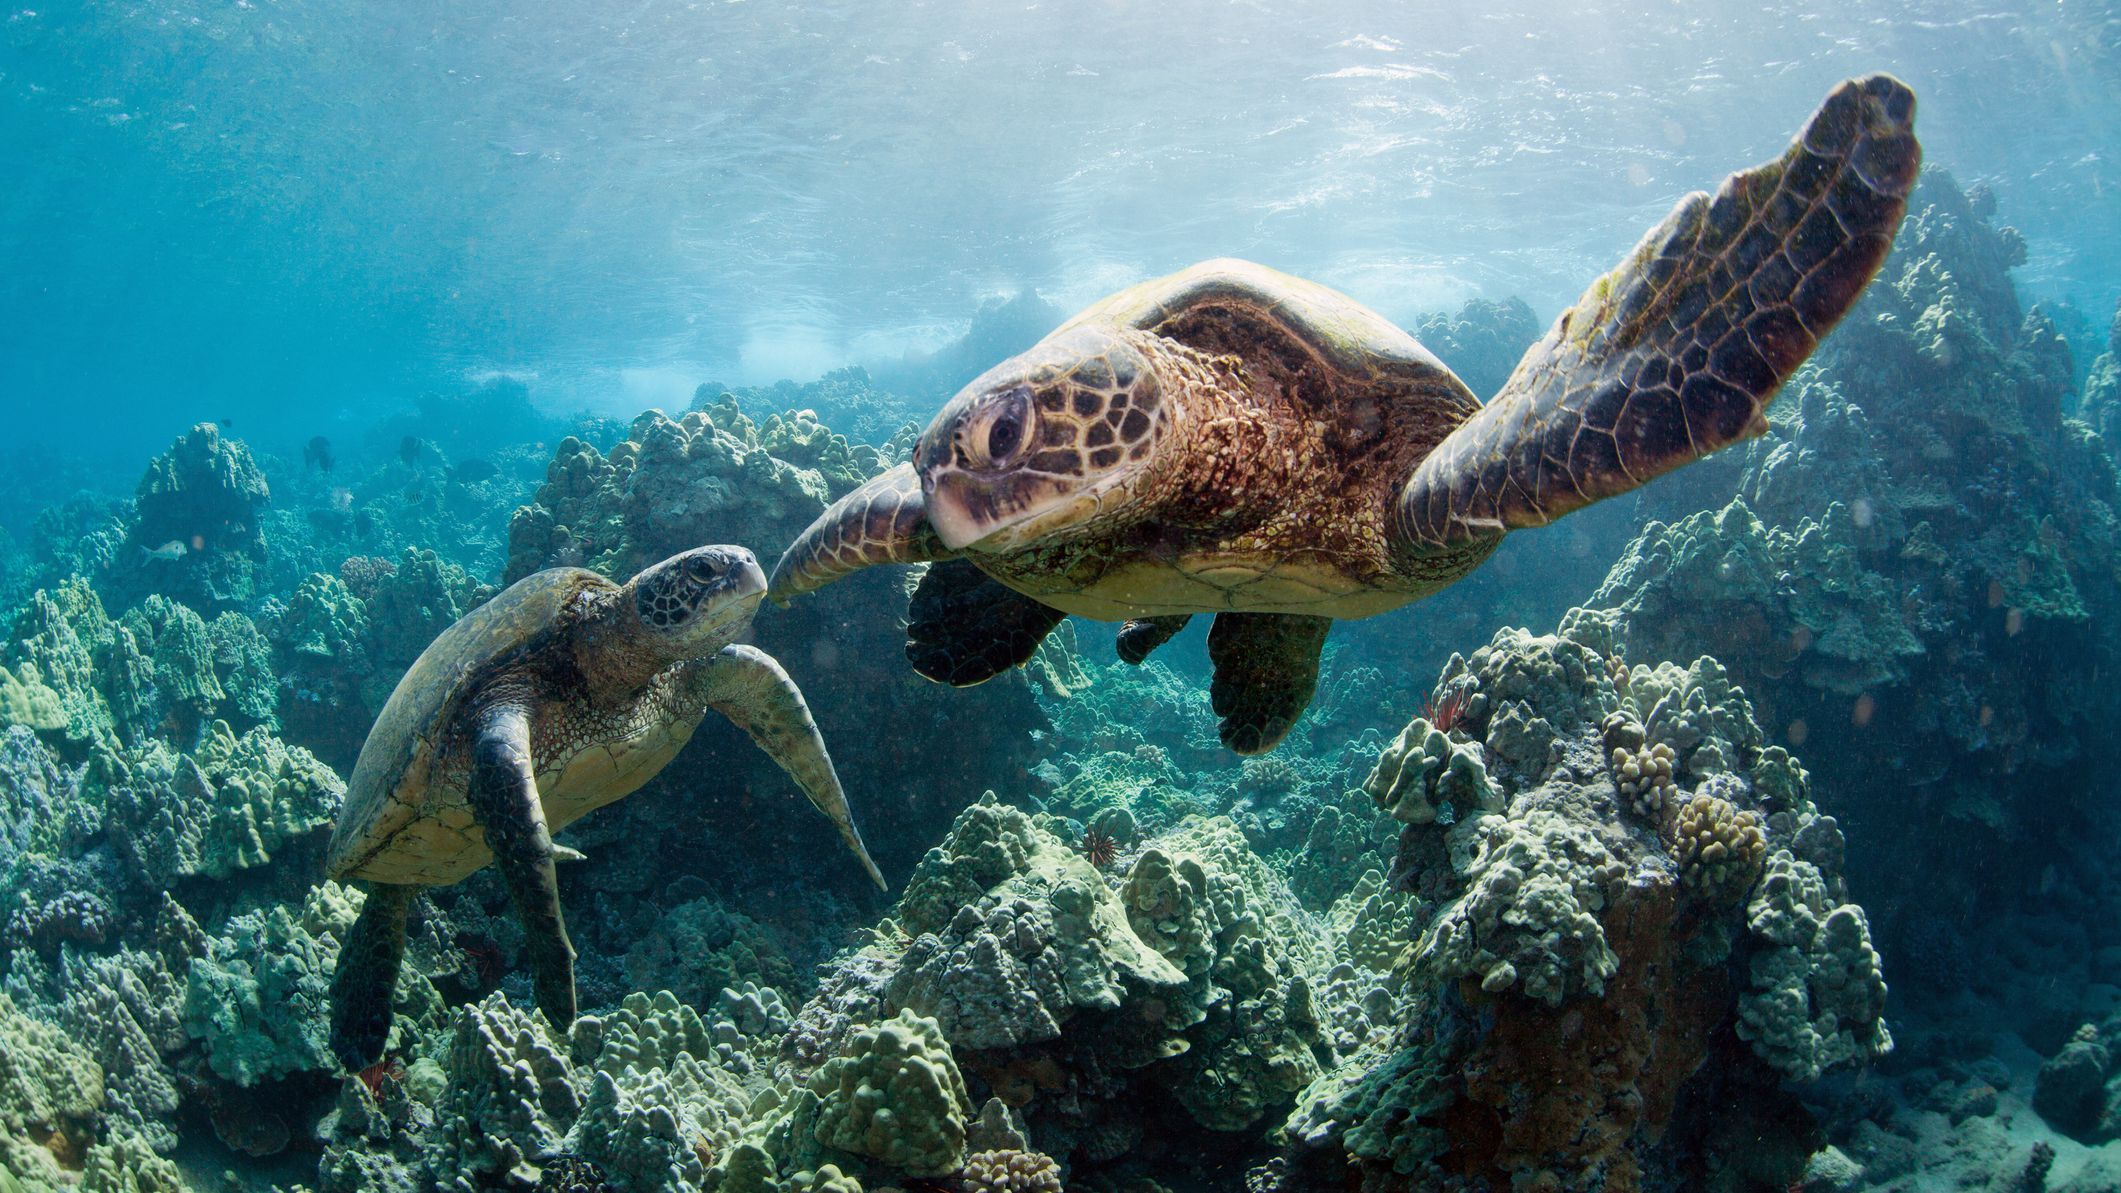 Unique symbolism of sea turtles